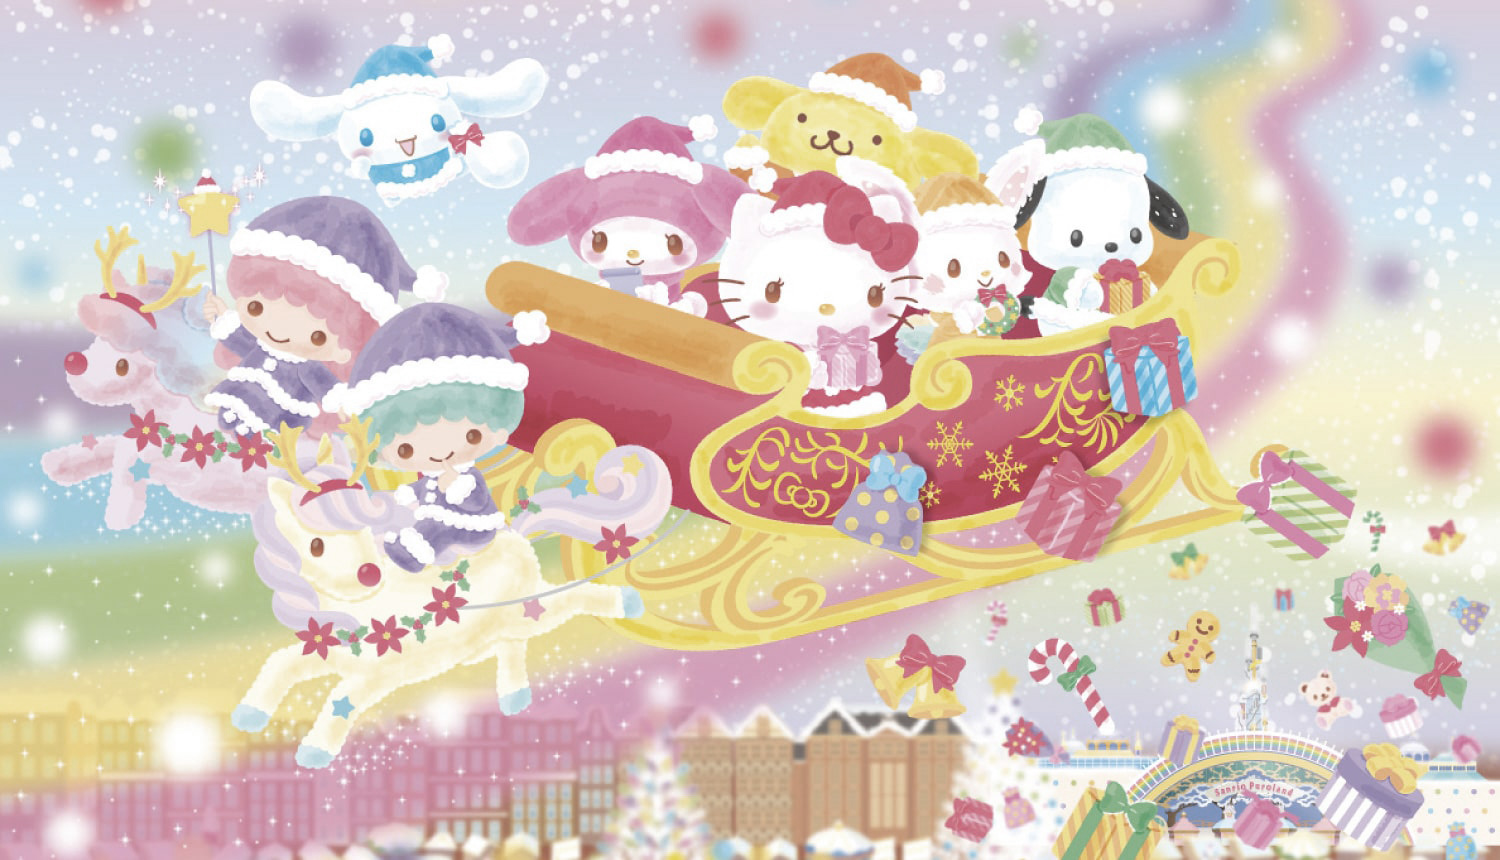 Sanrio Christmas Wallpaper - NawPic